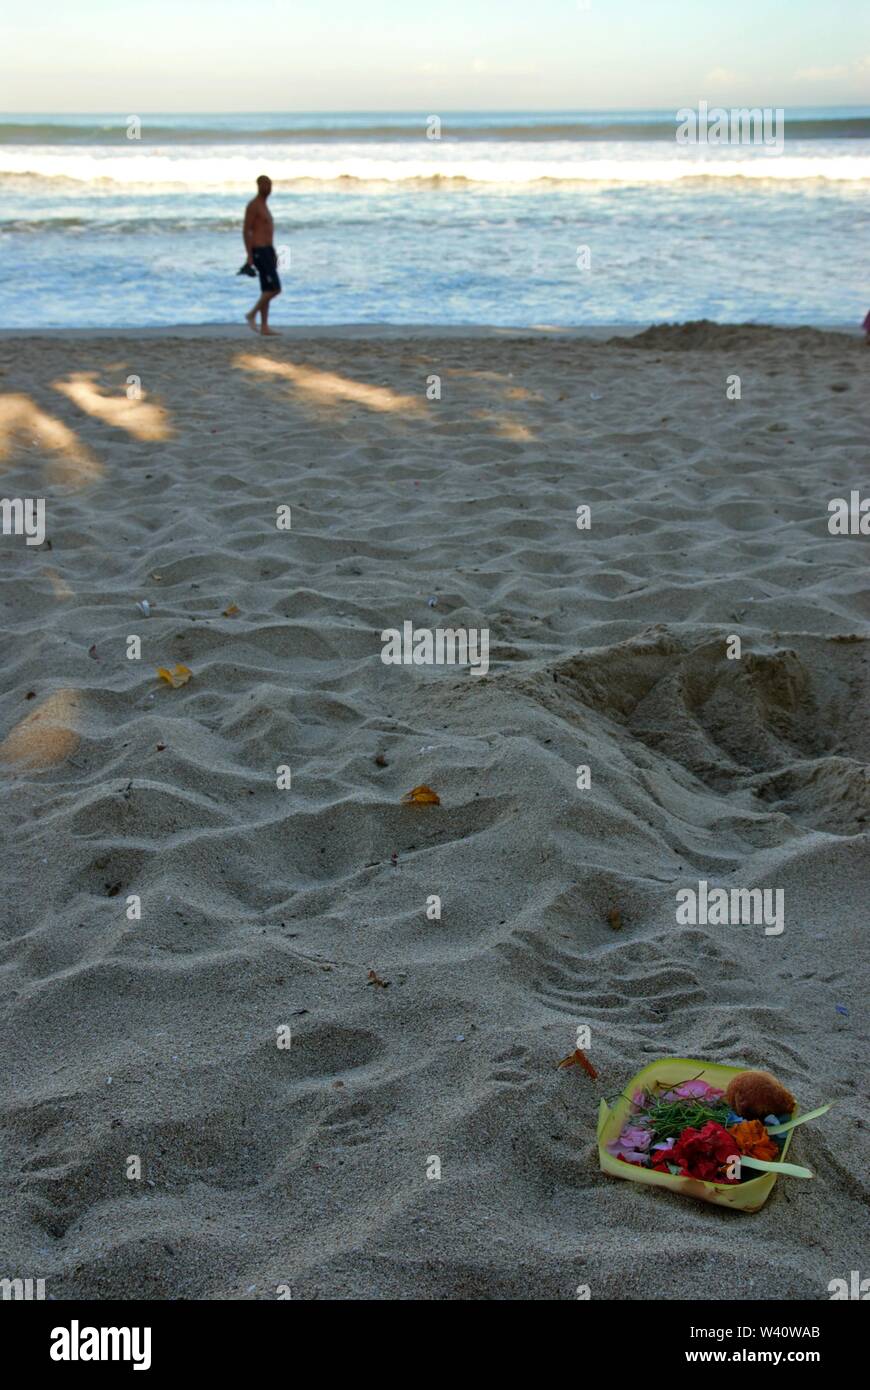 La spiaggia di Kuta Beach, Bali, Indonesia - Giugno 2019 : la gente a piedi su una spiaggia dove la gente mettere offrendo alla divinità Indù. Foto Stock